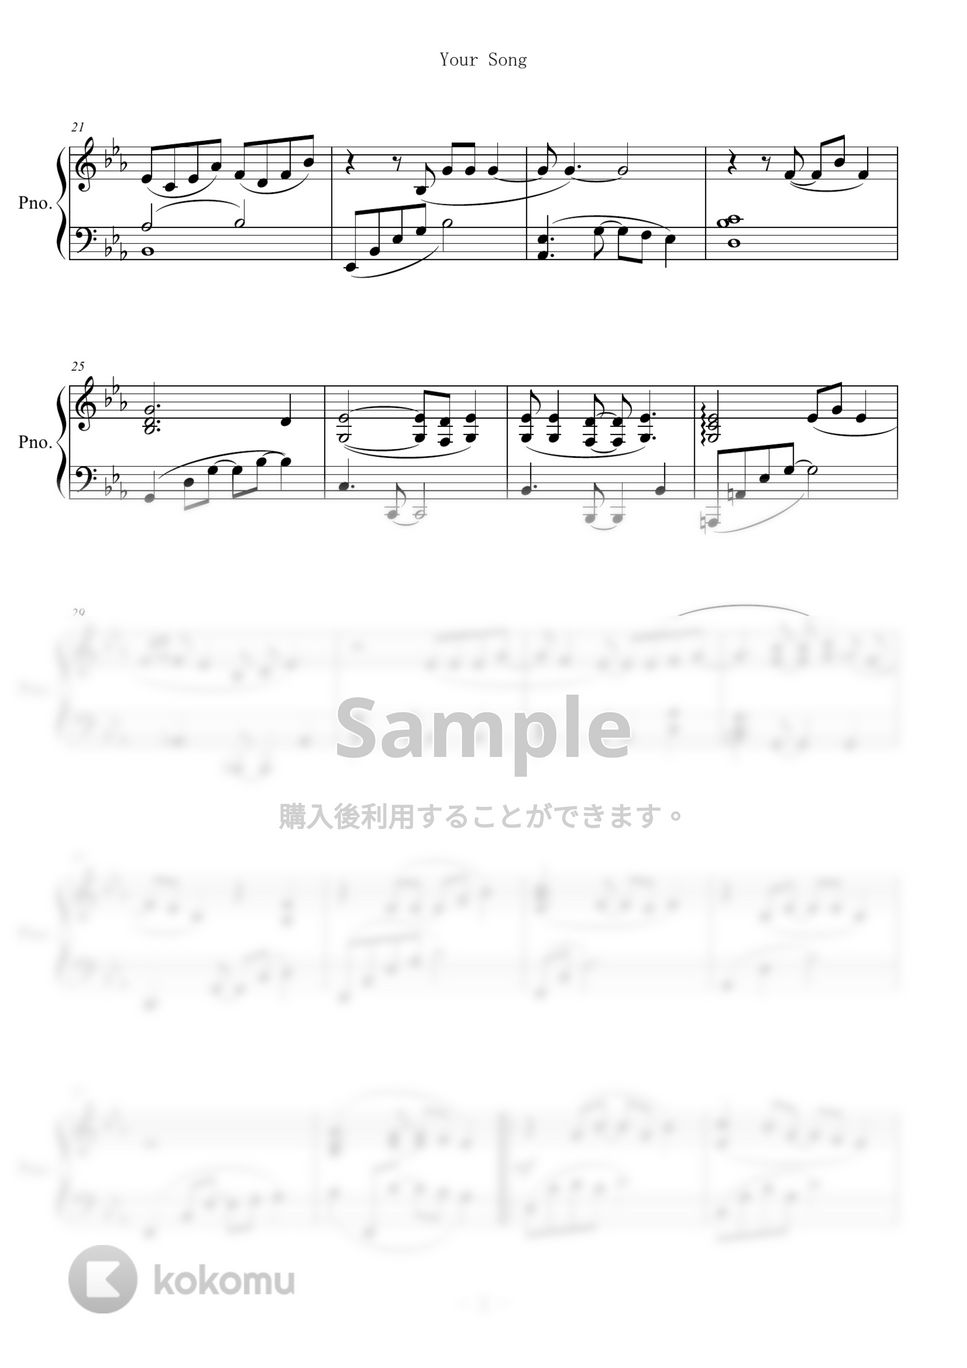 Elton John - Your Song (ピアノ中級) by Yasunori Oshiro